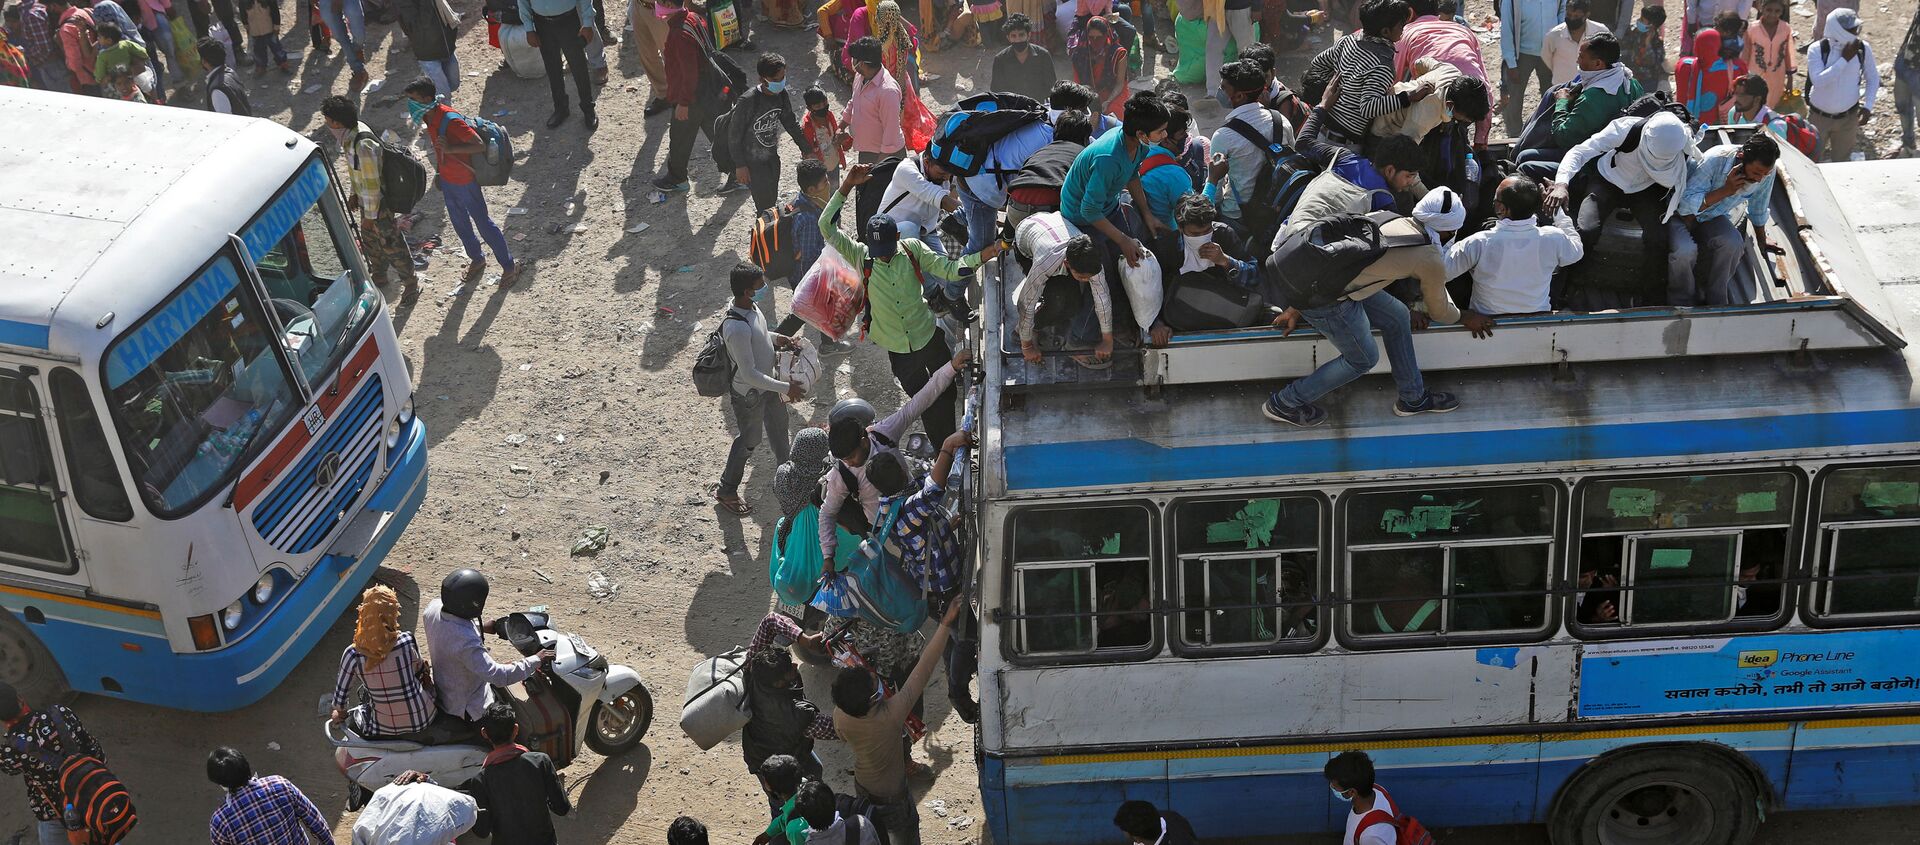 عمال مهاجرون في حافلات مزدحمة في غازي آباد، يحاولون العودة إلى منازلهم، بعد الإعلان عن الإغلاق التام بسبب انتشار فيروس كورونا في الهند 29 مارس 2020 - سبوتنيك عربي, 1920, 16.05.2020